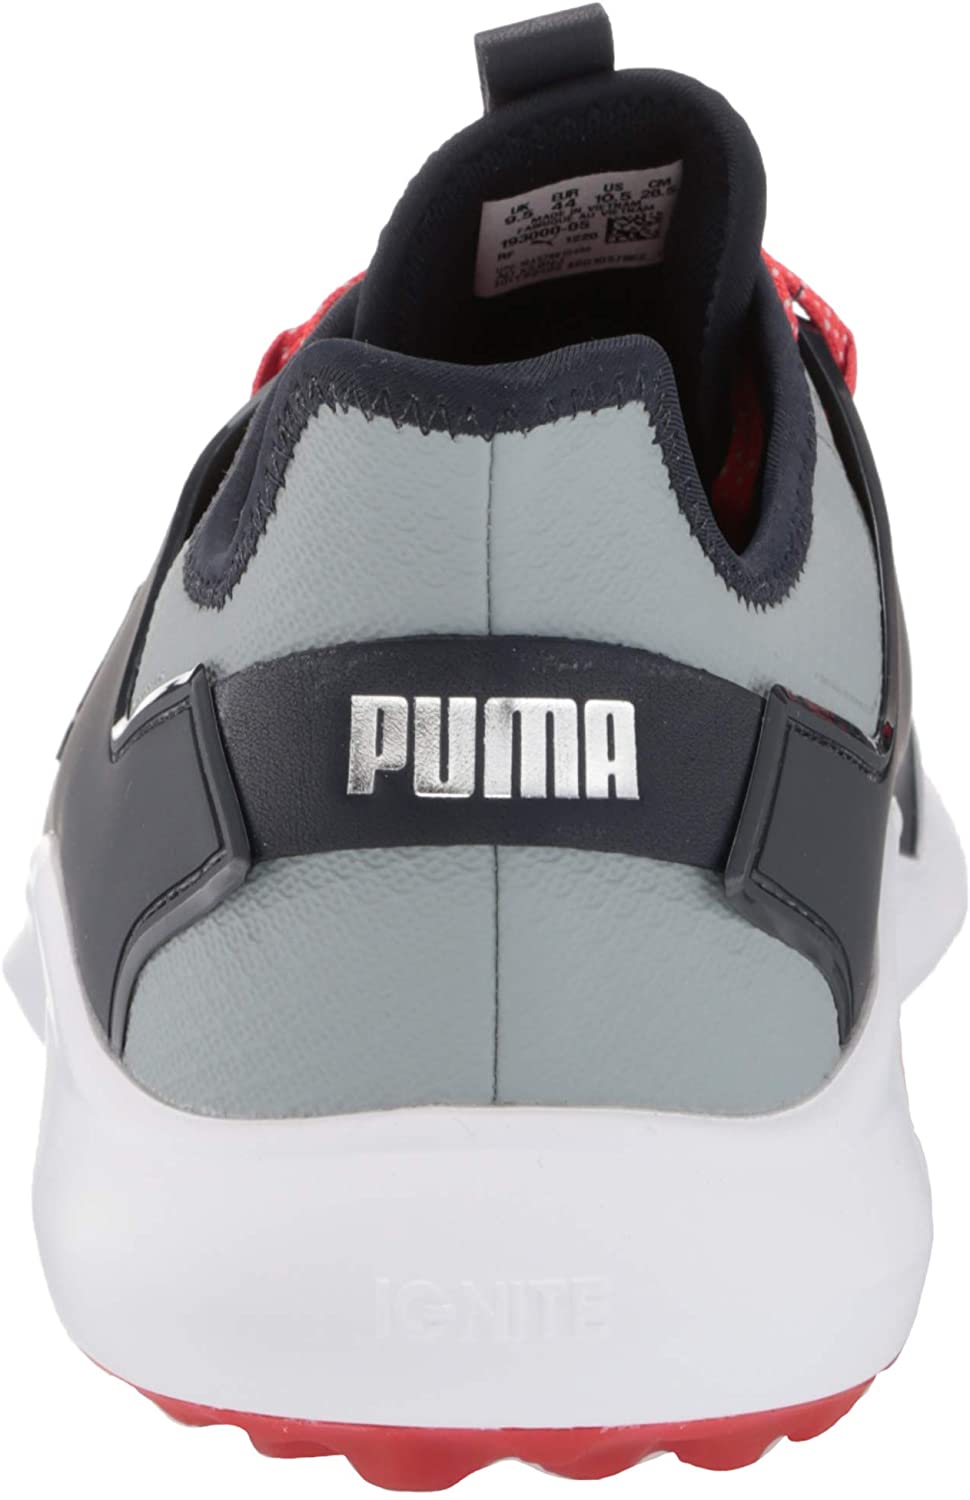 PUMA Mens Ignite Fasten8 Golf Shoe 12 Quarry-puma Silver-navy Blazer - image 3 of 8